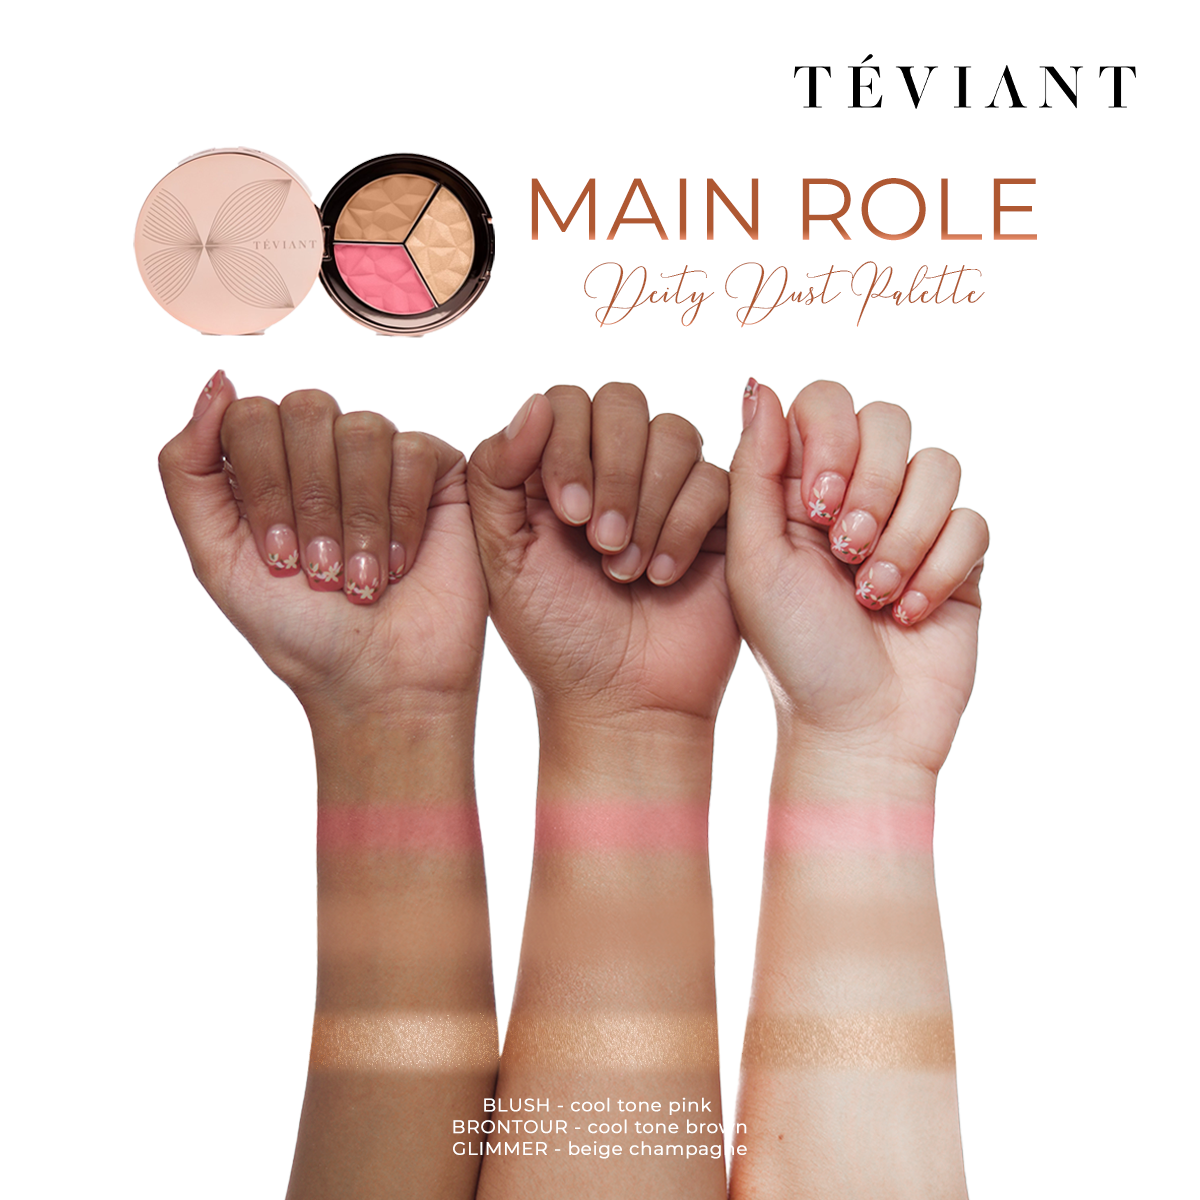 Teviant | Deity Dust | Trio Face Palette